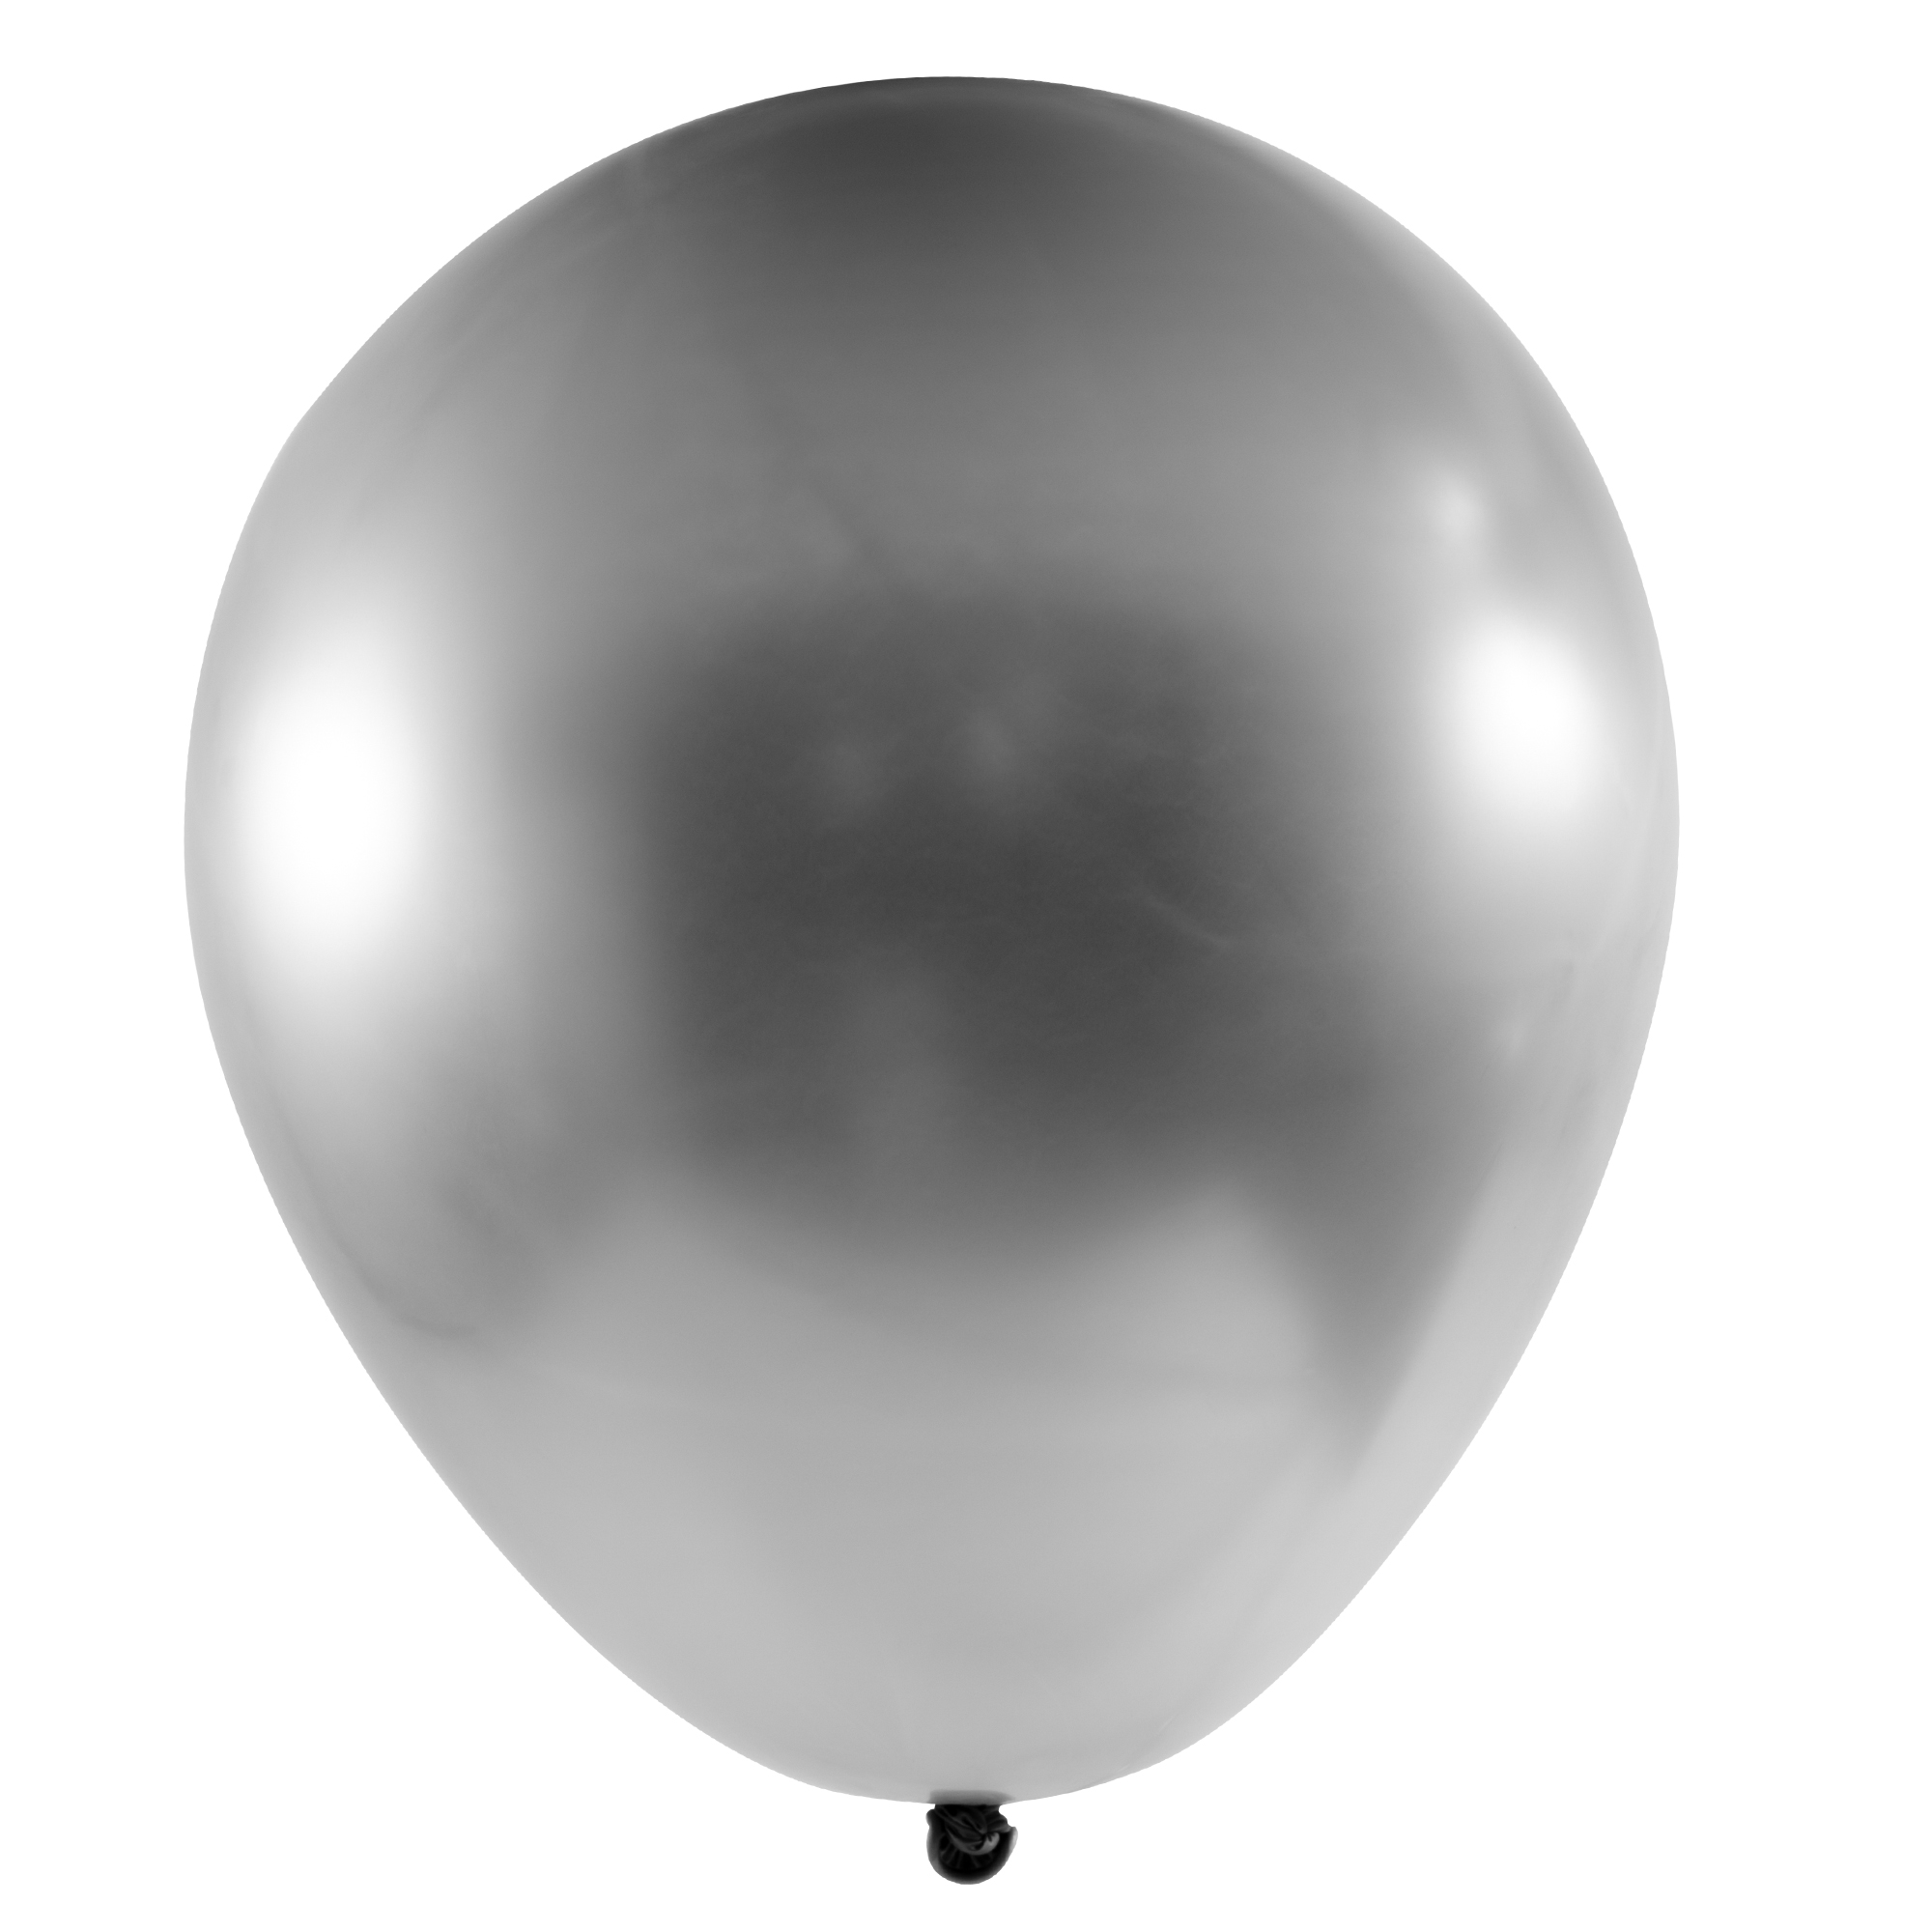 Chrome Latex Balloon 18" 10pc/bag - Silver